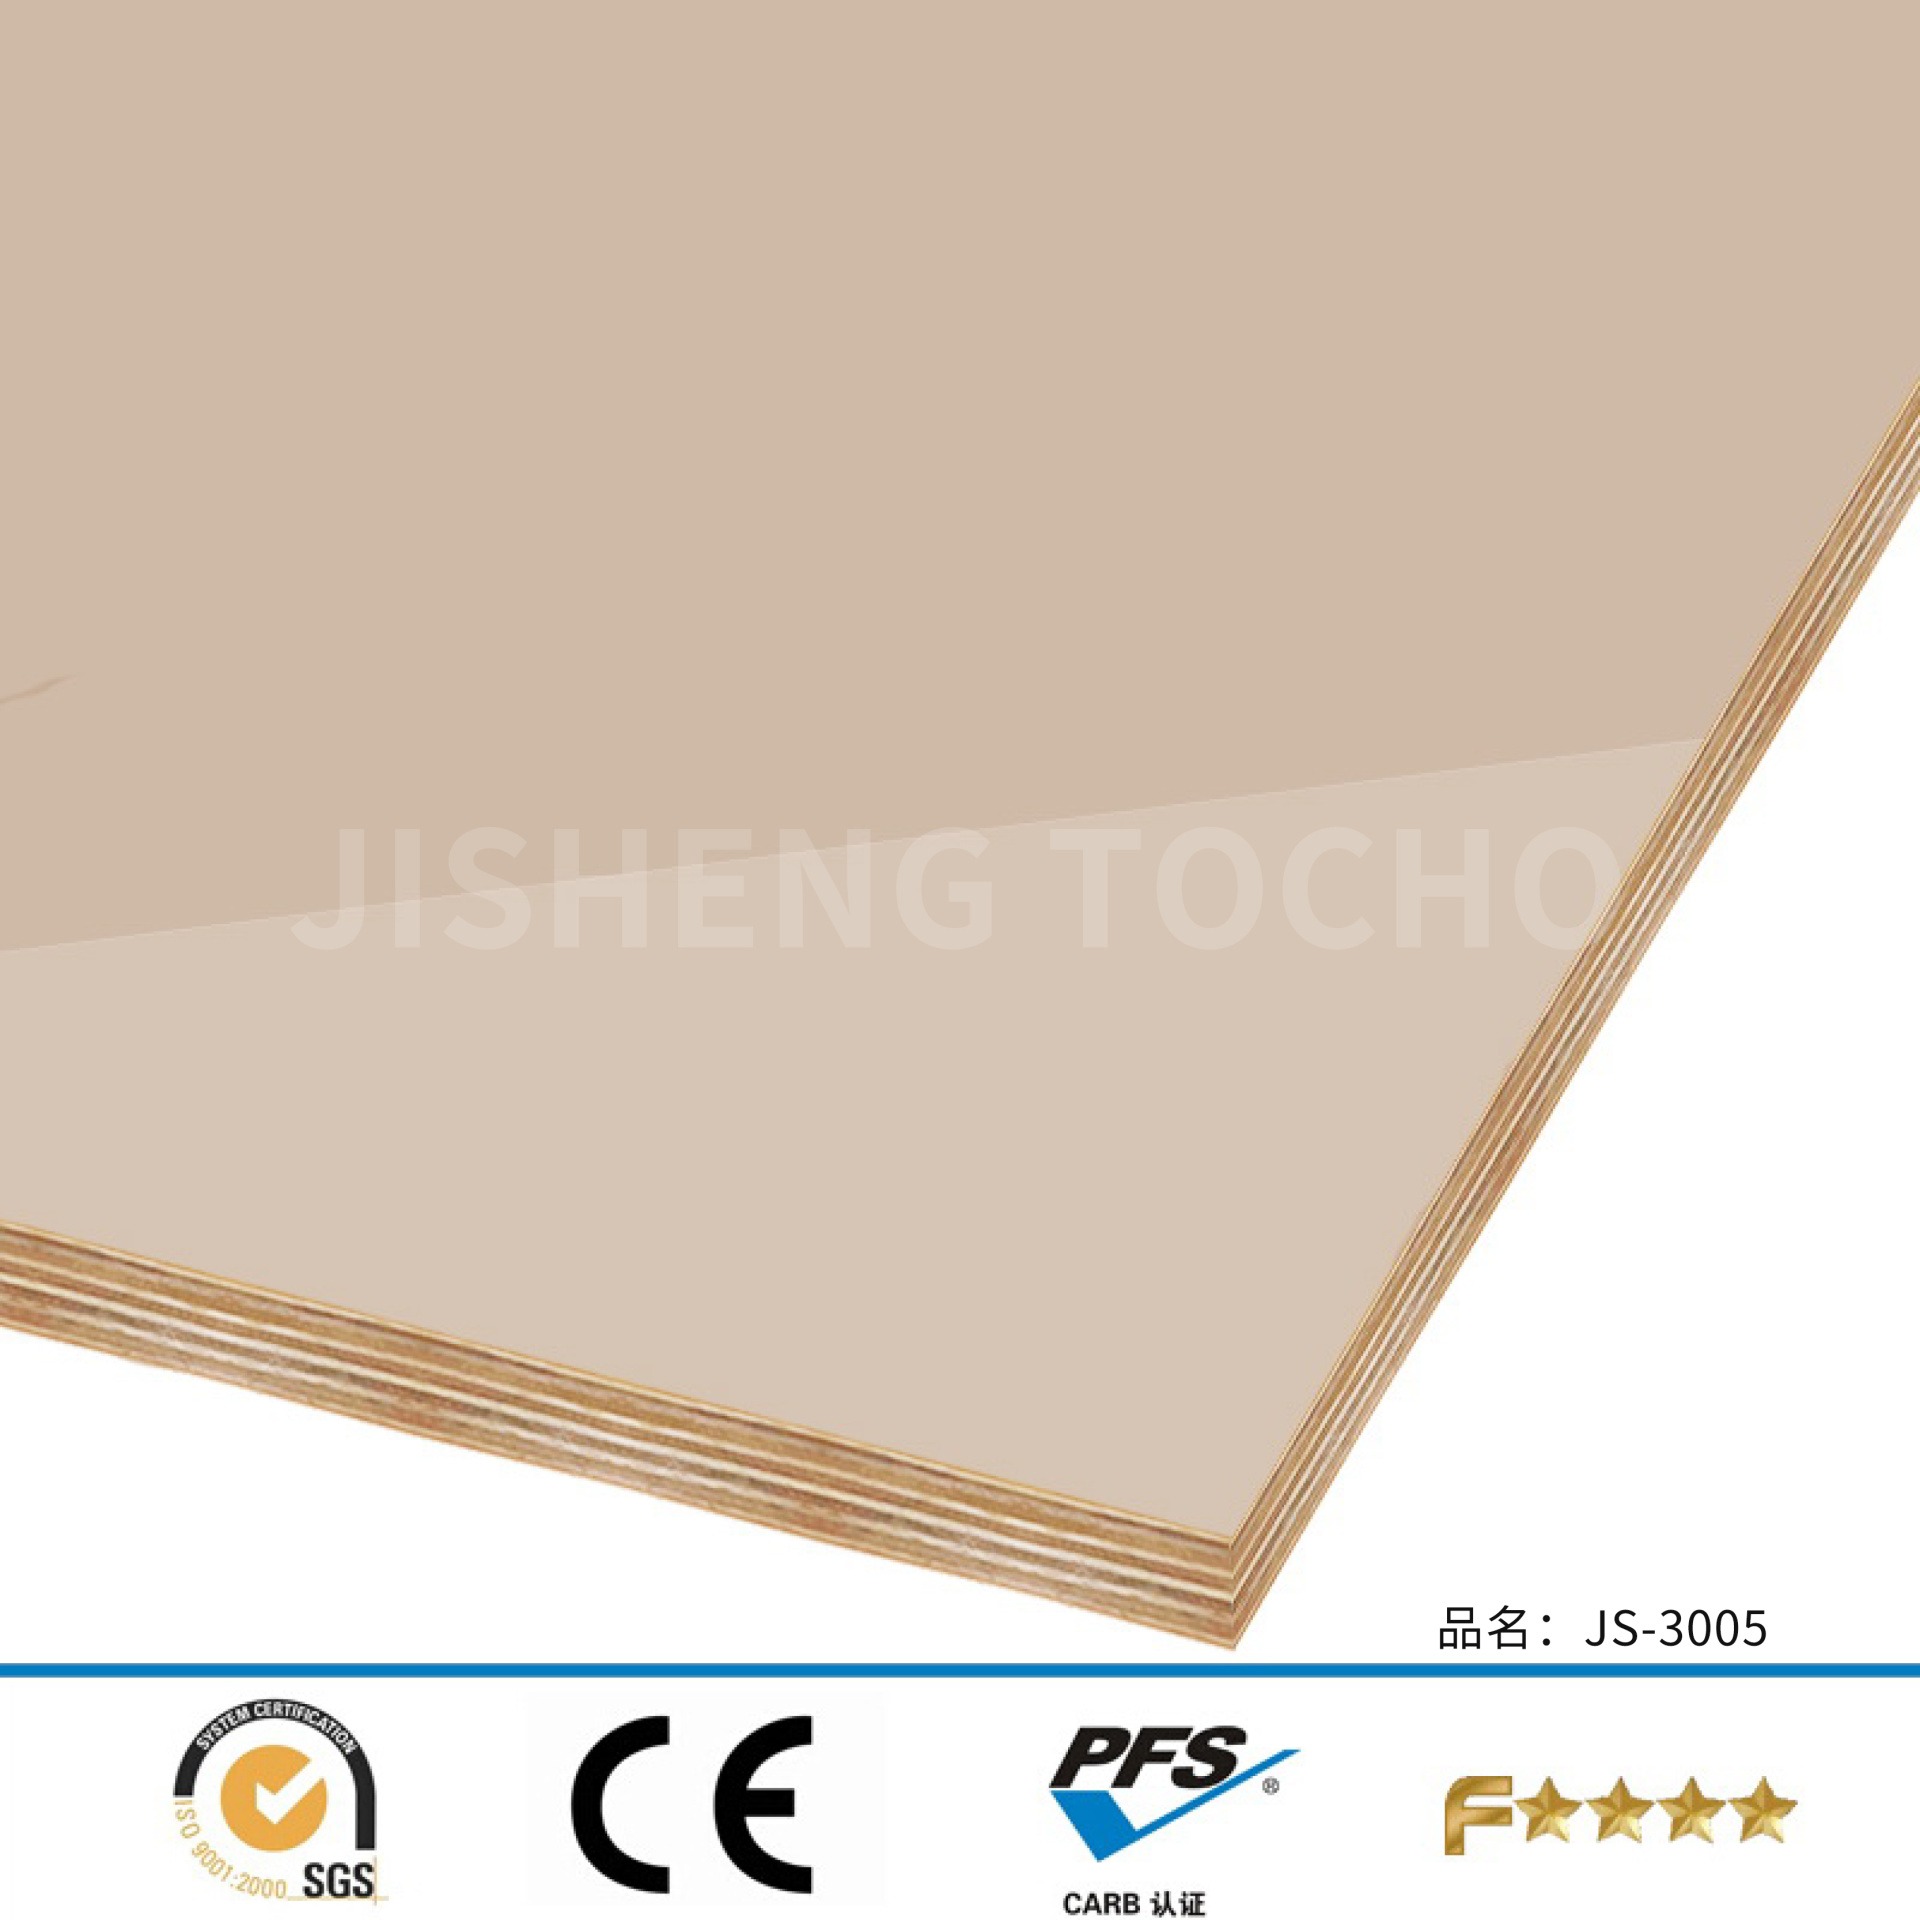 F4星环保门板 定制UV高光胶合板 滑面门板 耐污饰面板 家具装修板 源头价格材料图片